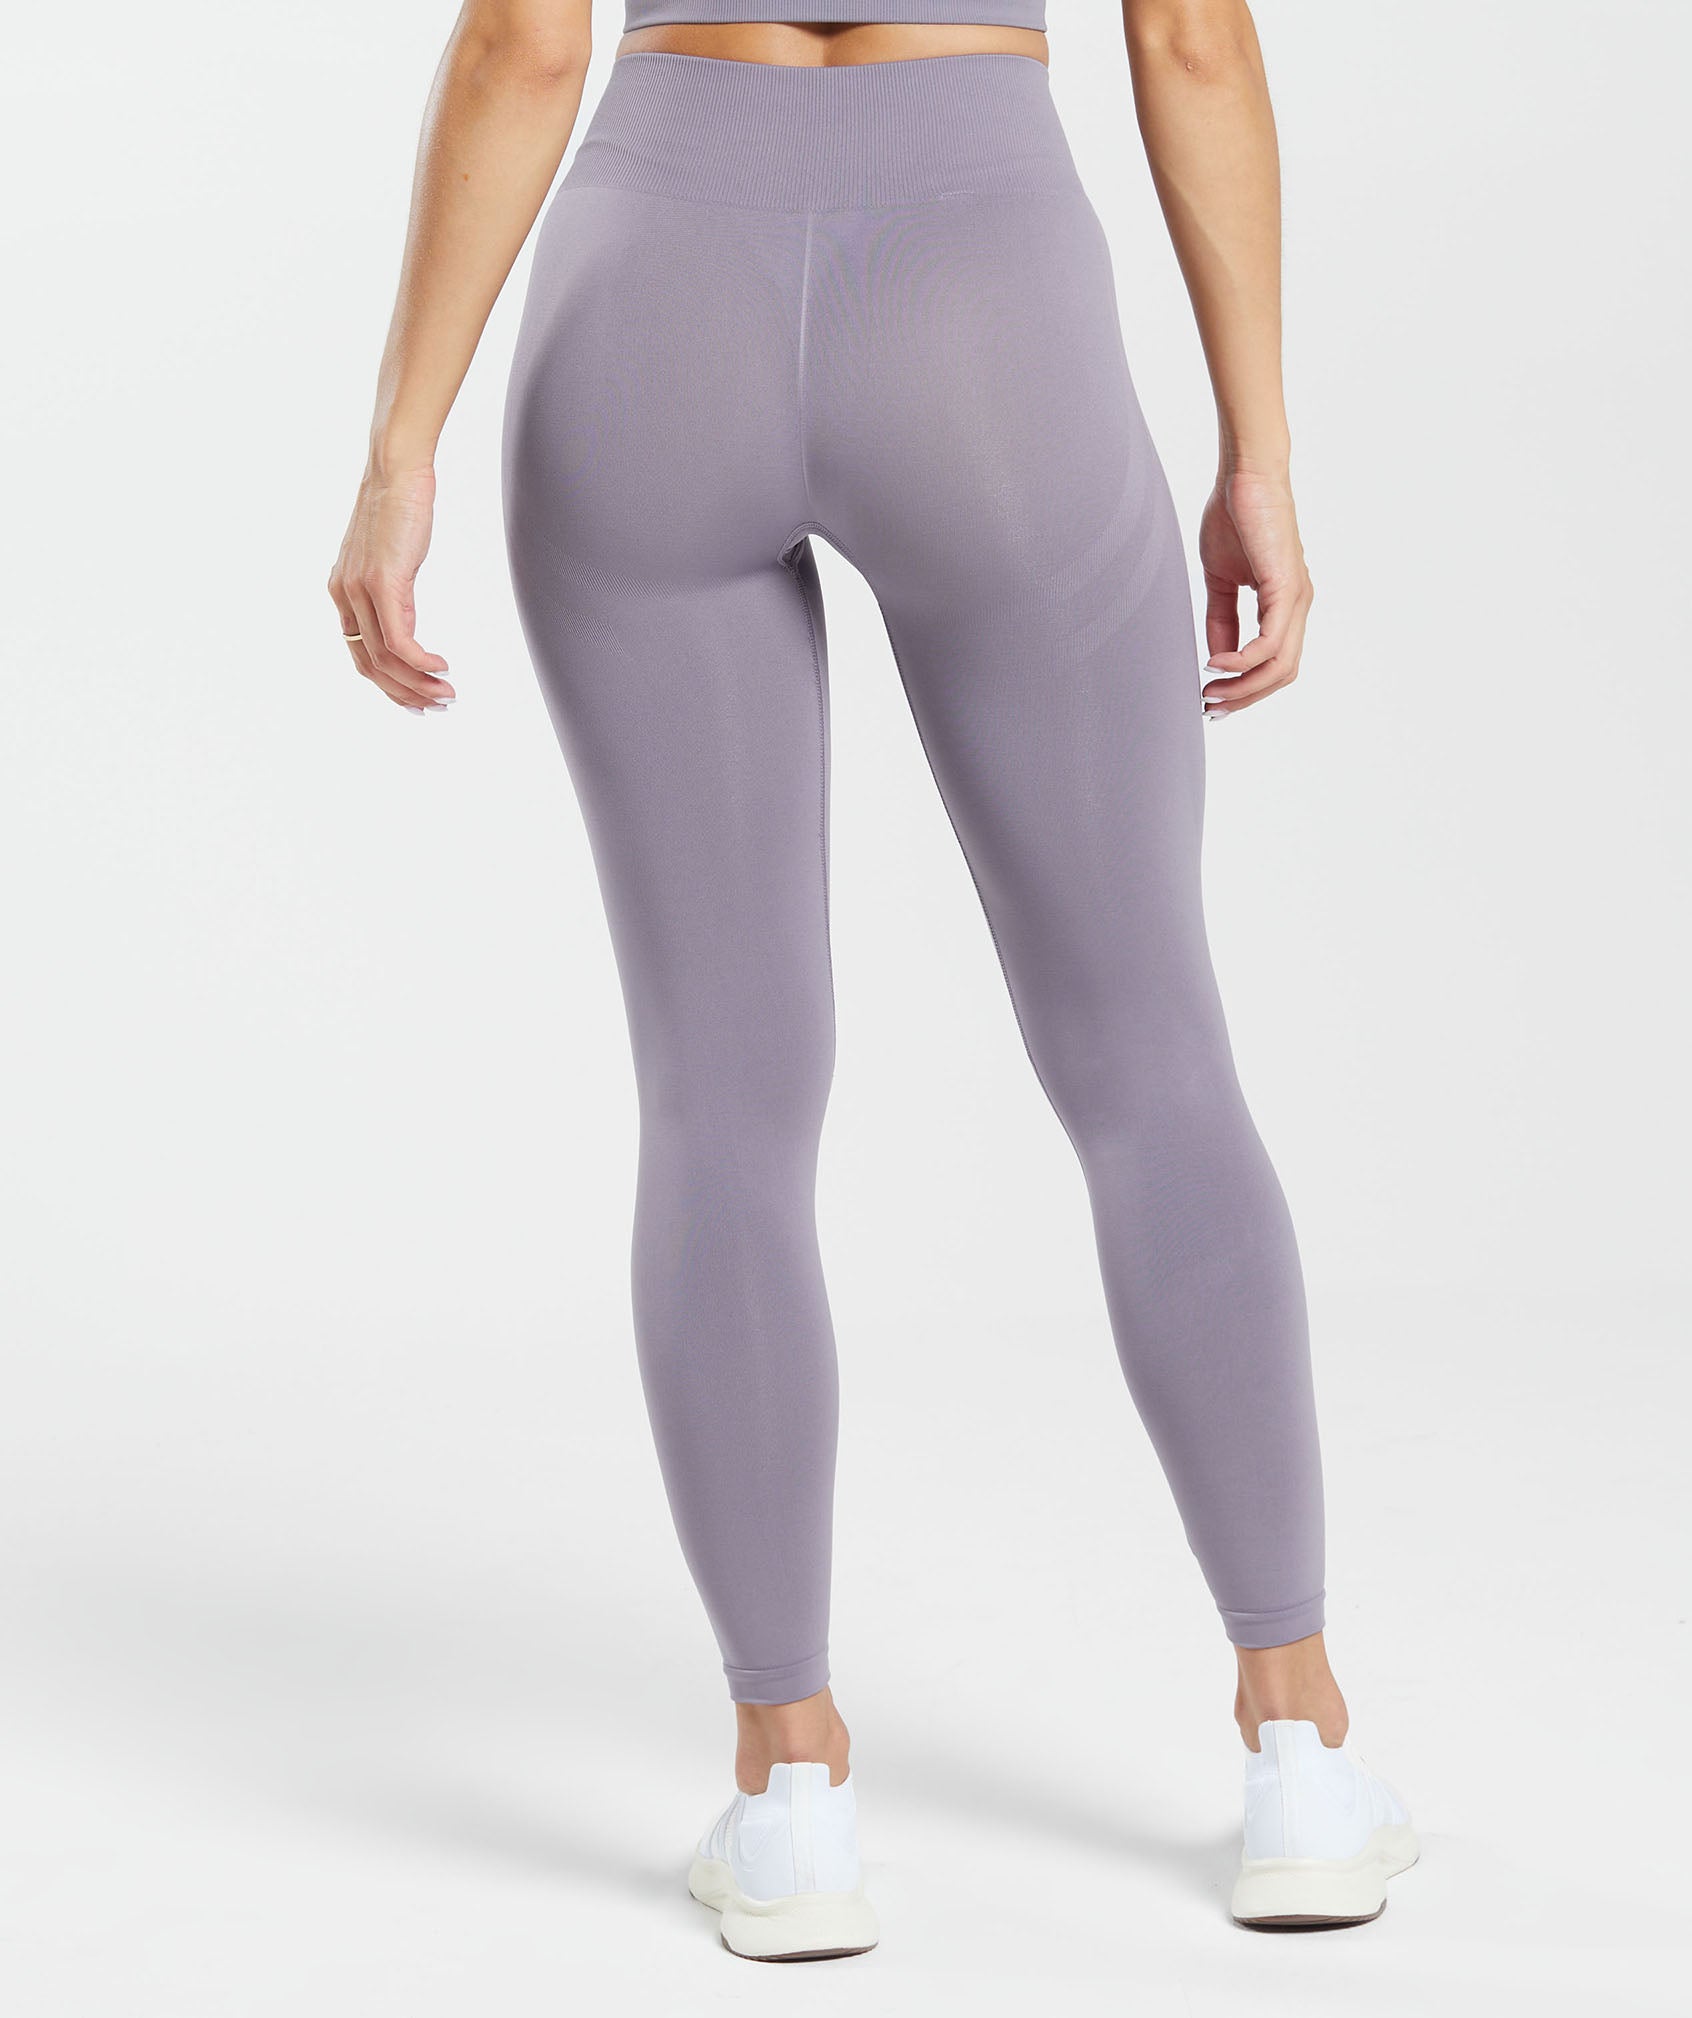 Gymshark Dry Leggings Women's Gray Purple Waistband Size Small S Full Leg